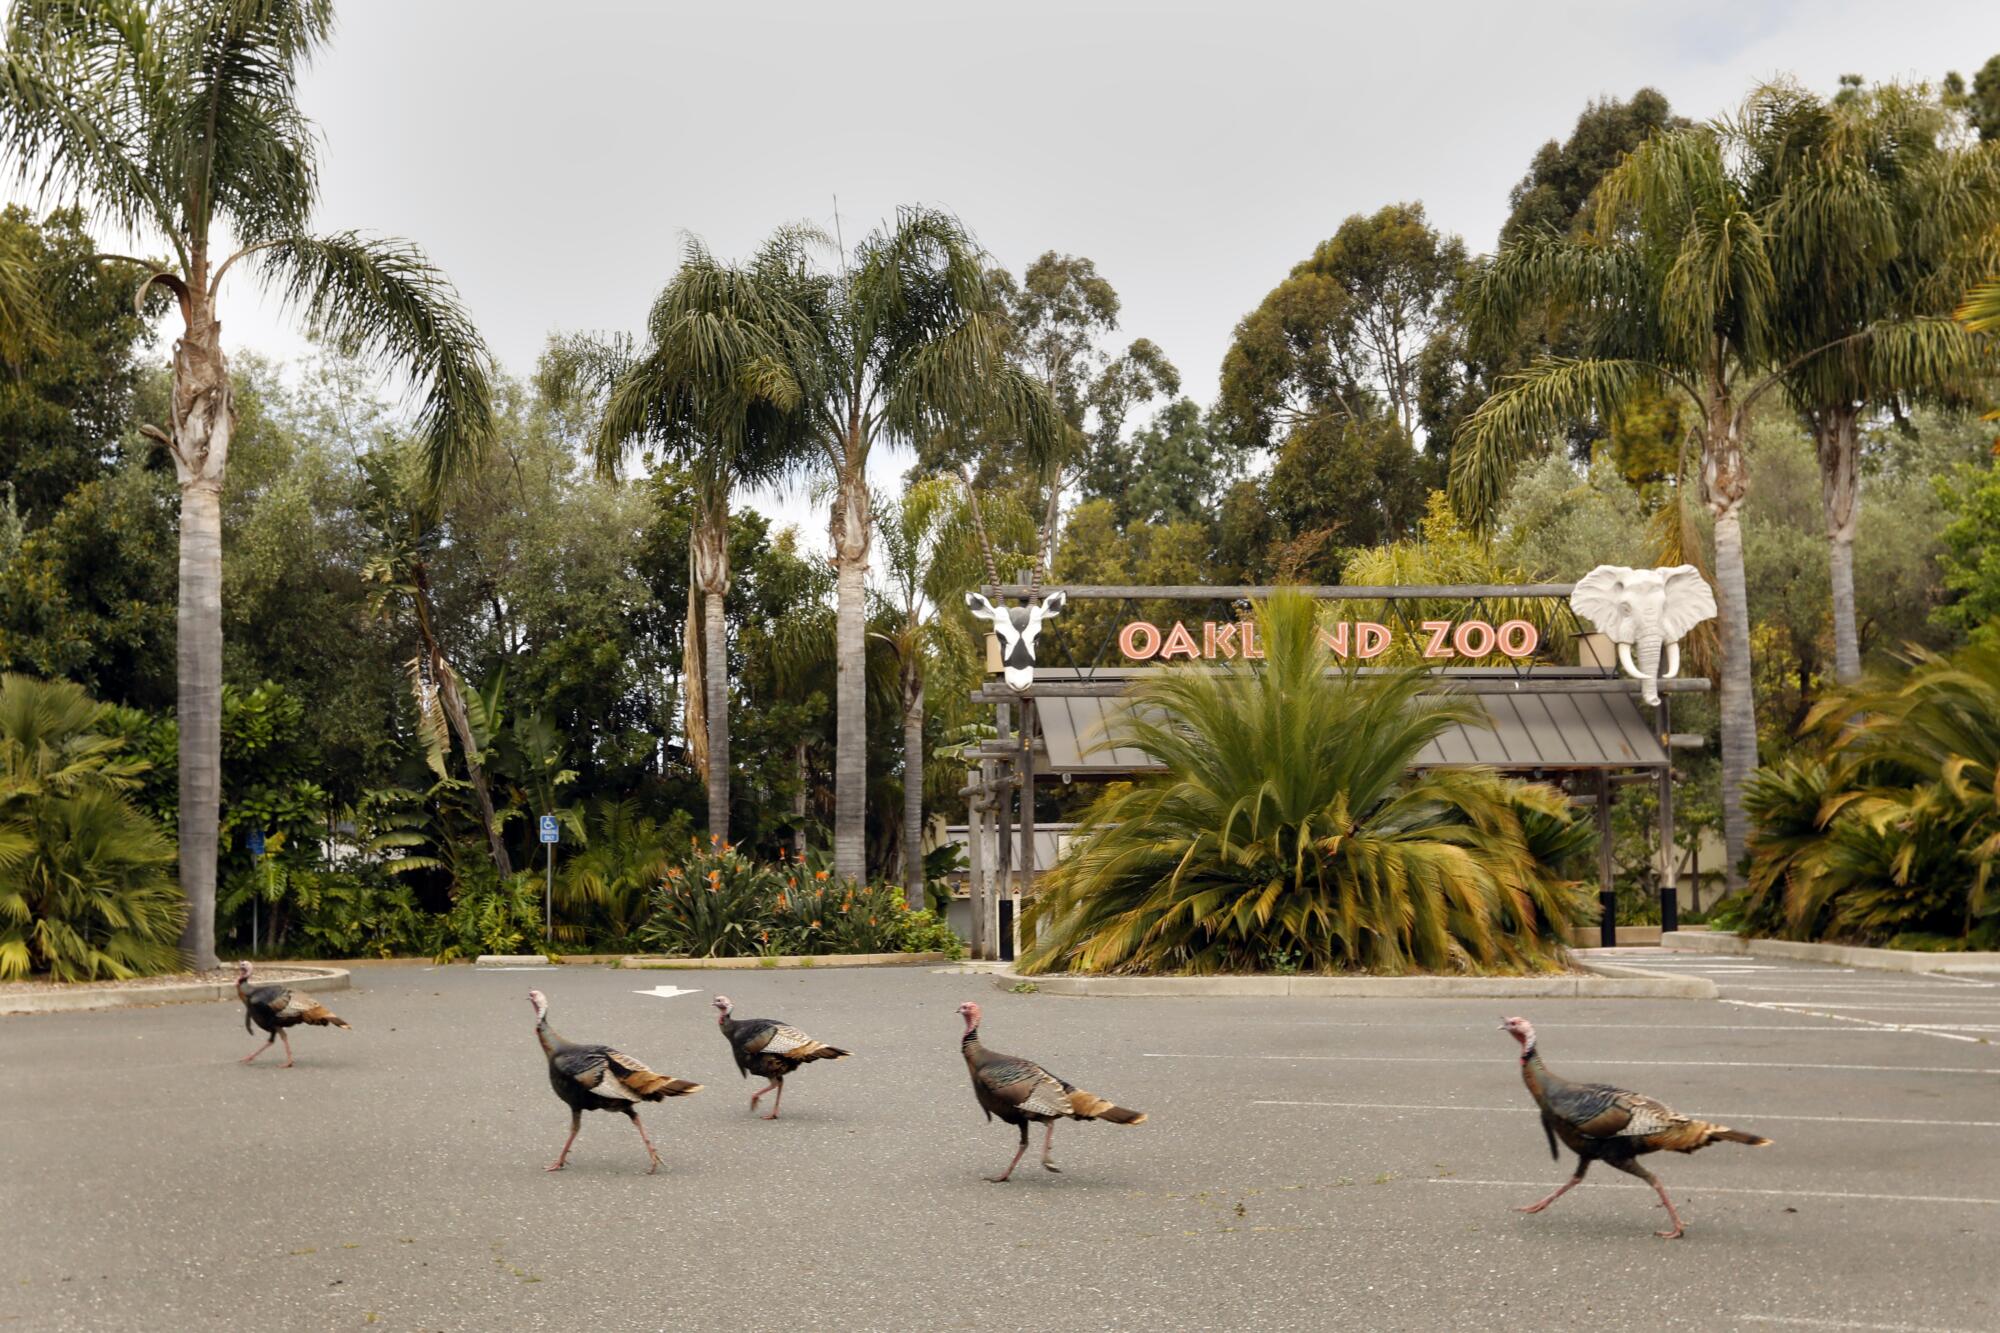 Wild turkeys wander in a parking lot